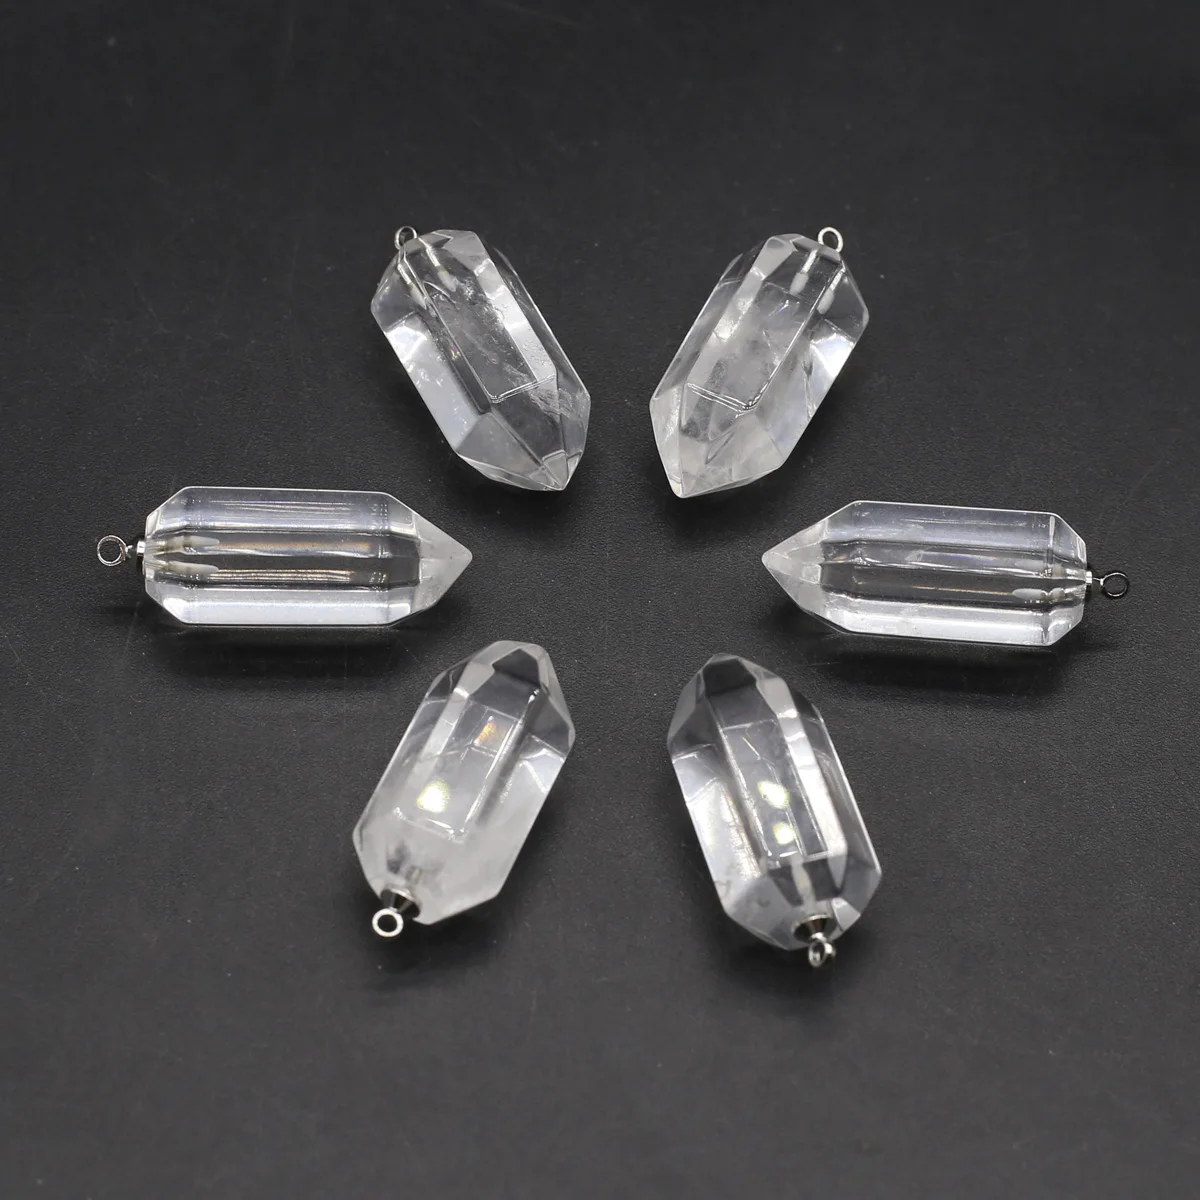 

Натуральный камень белый кристально чистый кварц шестиугольная Призма кулон для изготовления DIY кулон ювелирные изделия ожерелье аксессуары